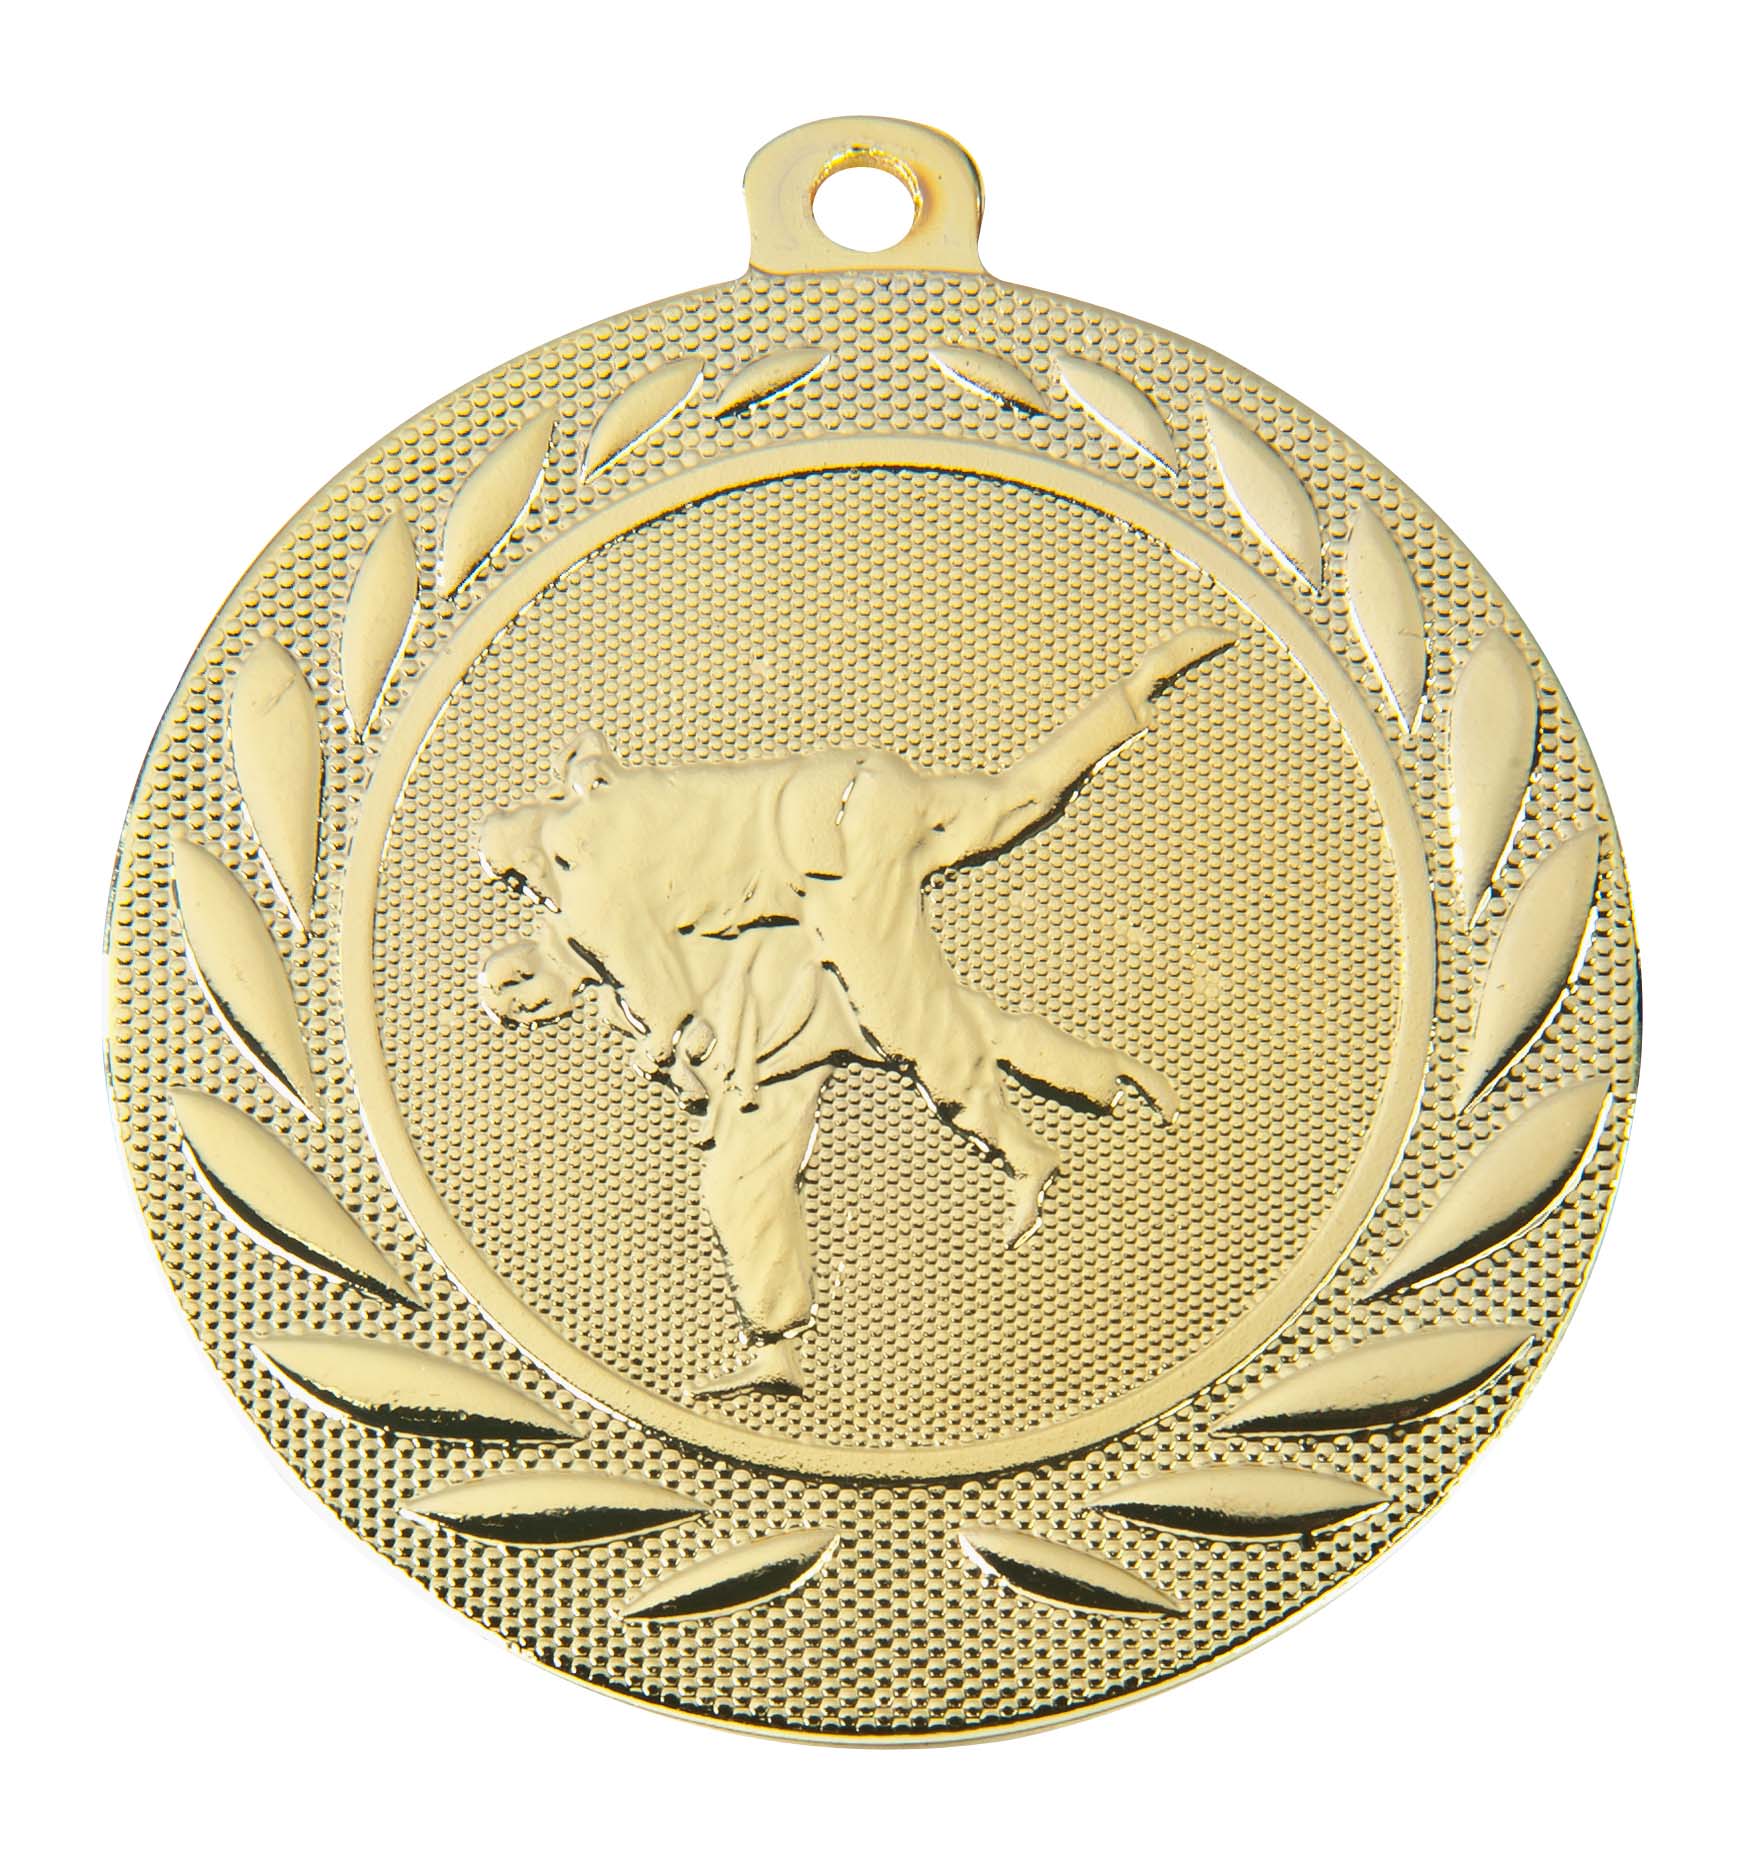 Judo-Medaille DI5000.I inkl. Band und Beschriftung Gold Fertig montiert gegen Aufpreis